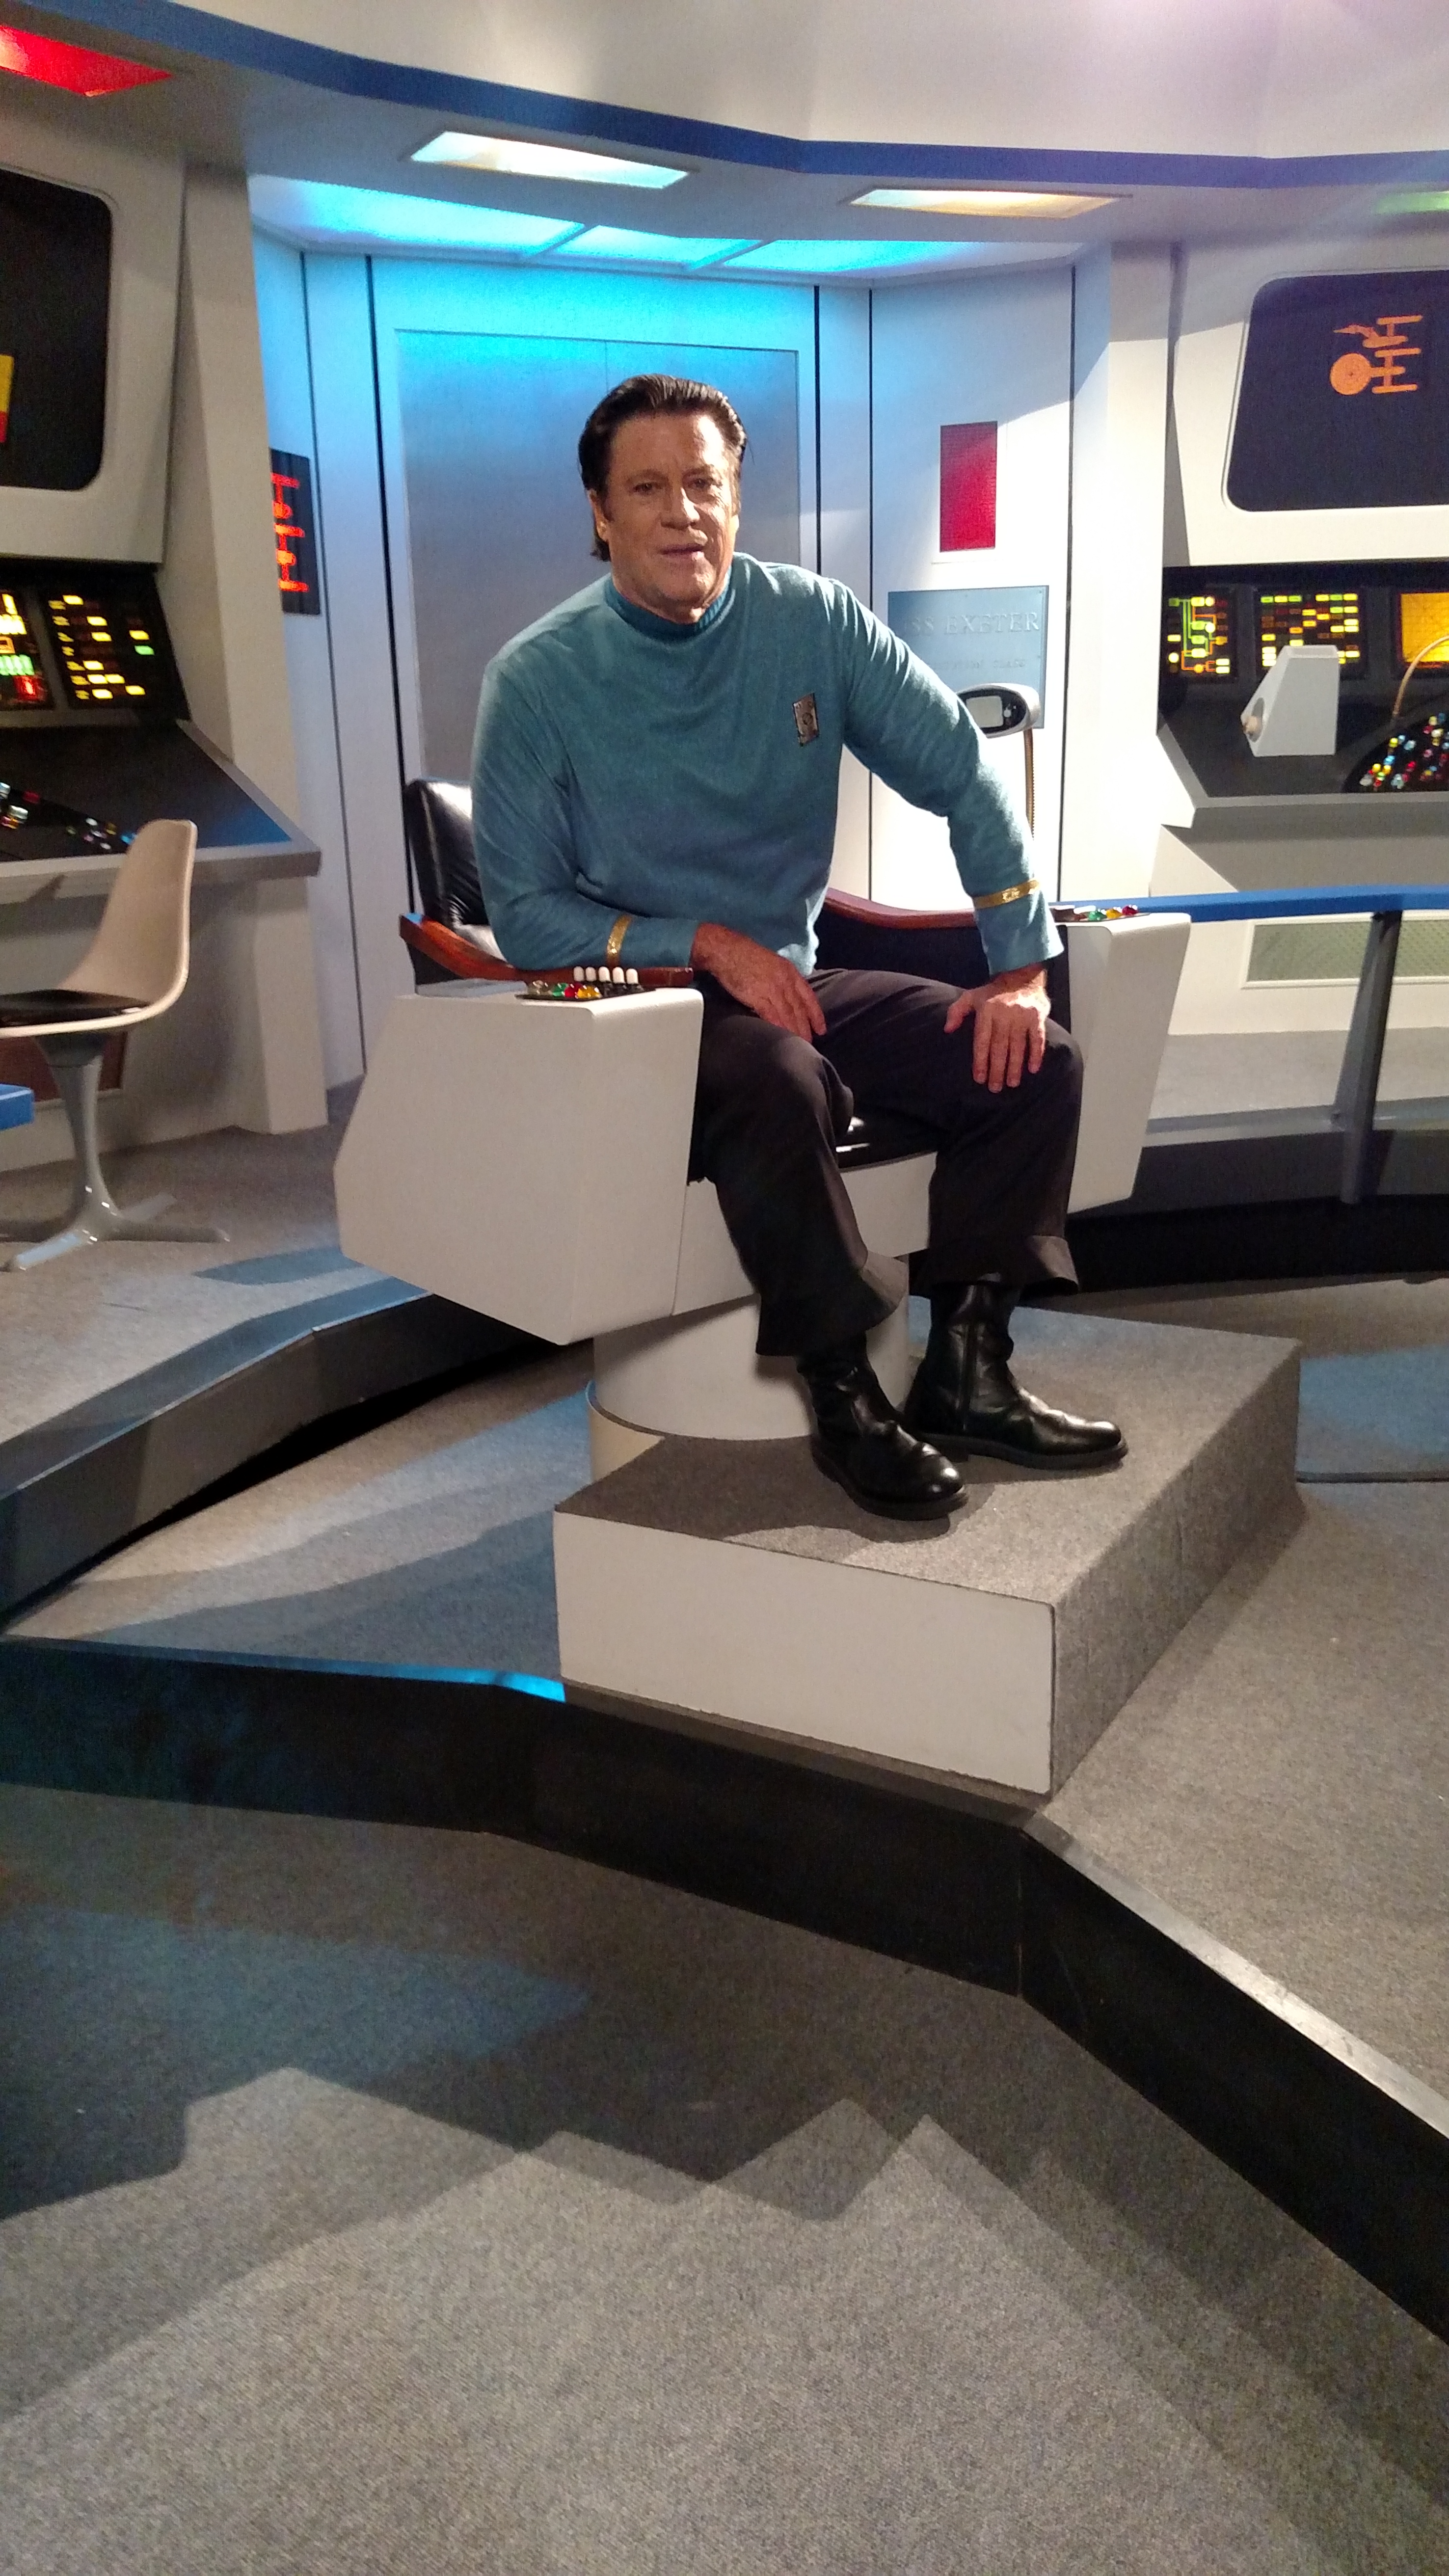 Star Trek - On the set of Exeter Trek